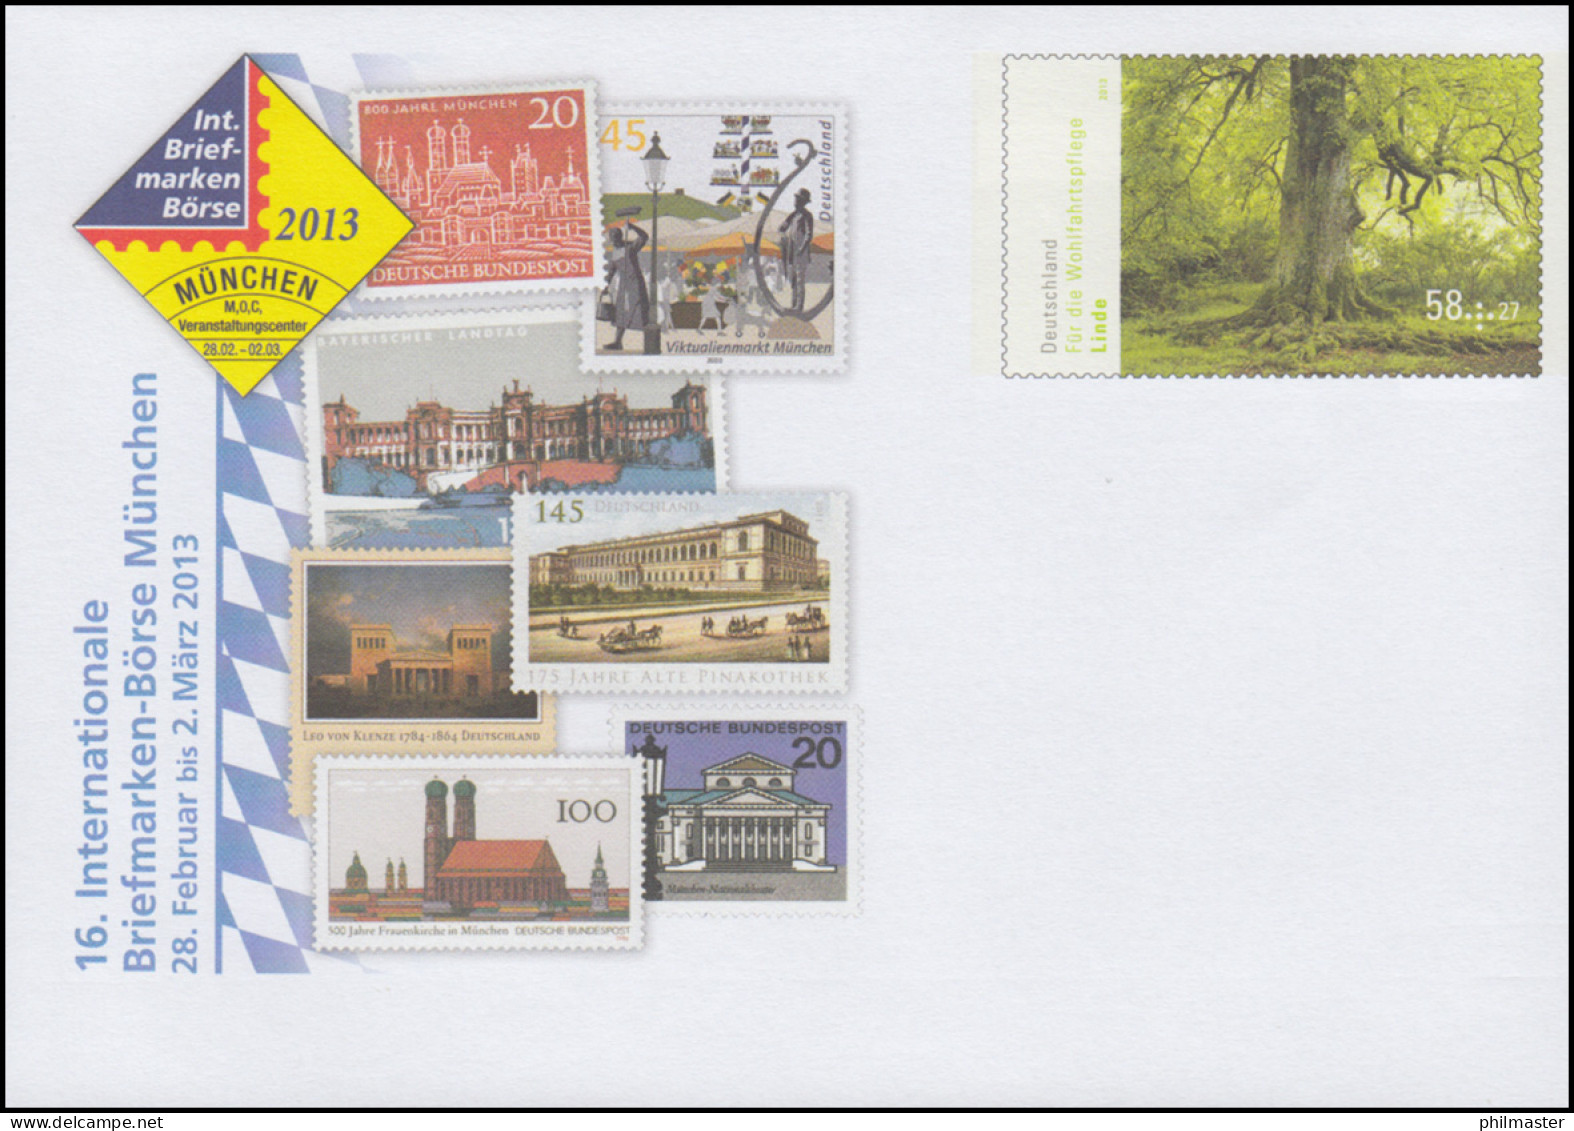 USo 283 Briefmarken-Börse München 2013, ** - Covers - Mint